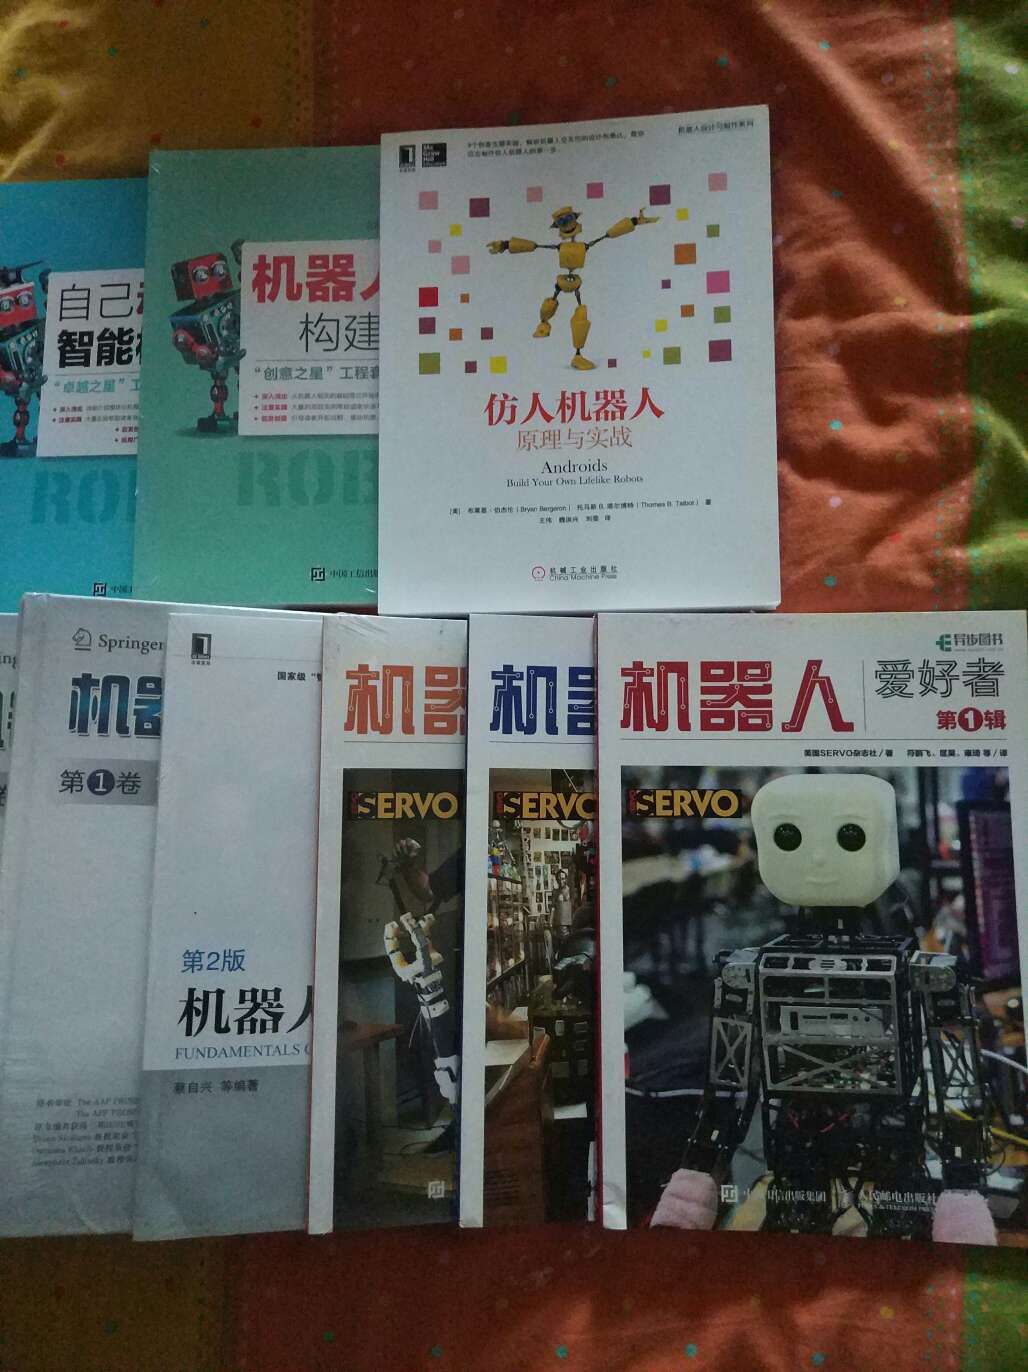 这几年机器人题材很火，也利用活动采购一些相关图书攻读一下。这系列很不错，是国外著名杂志的中文翻译，内容很受启发！可惜的是有些文章是前几年的，对于今年出版的图书来说内容有点过时了！